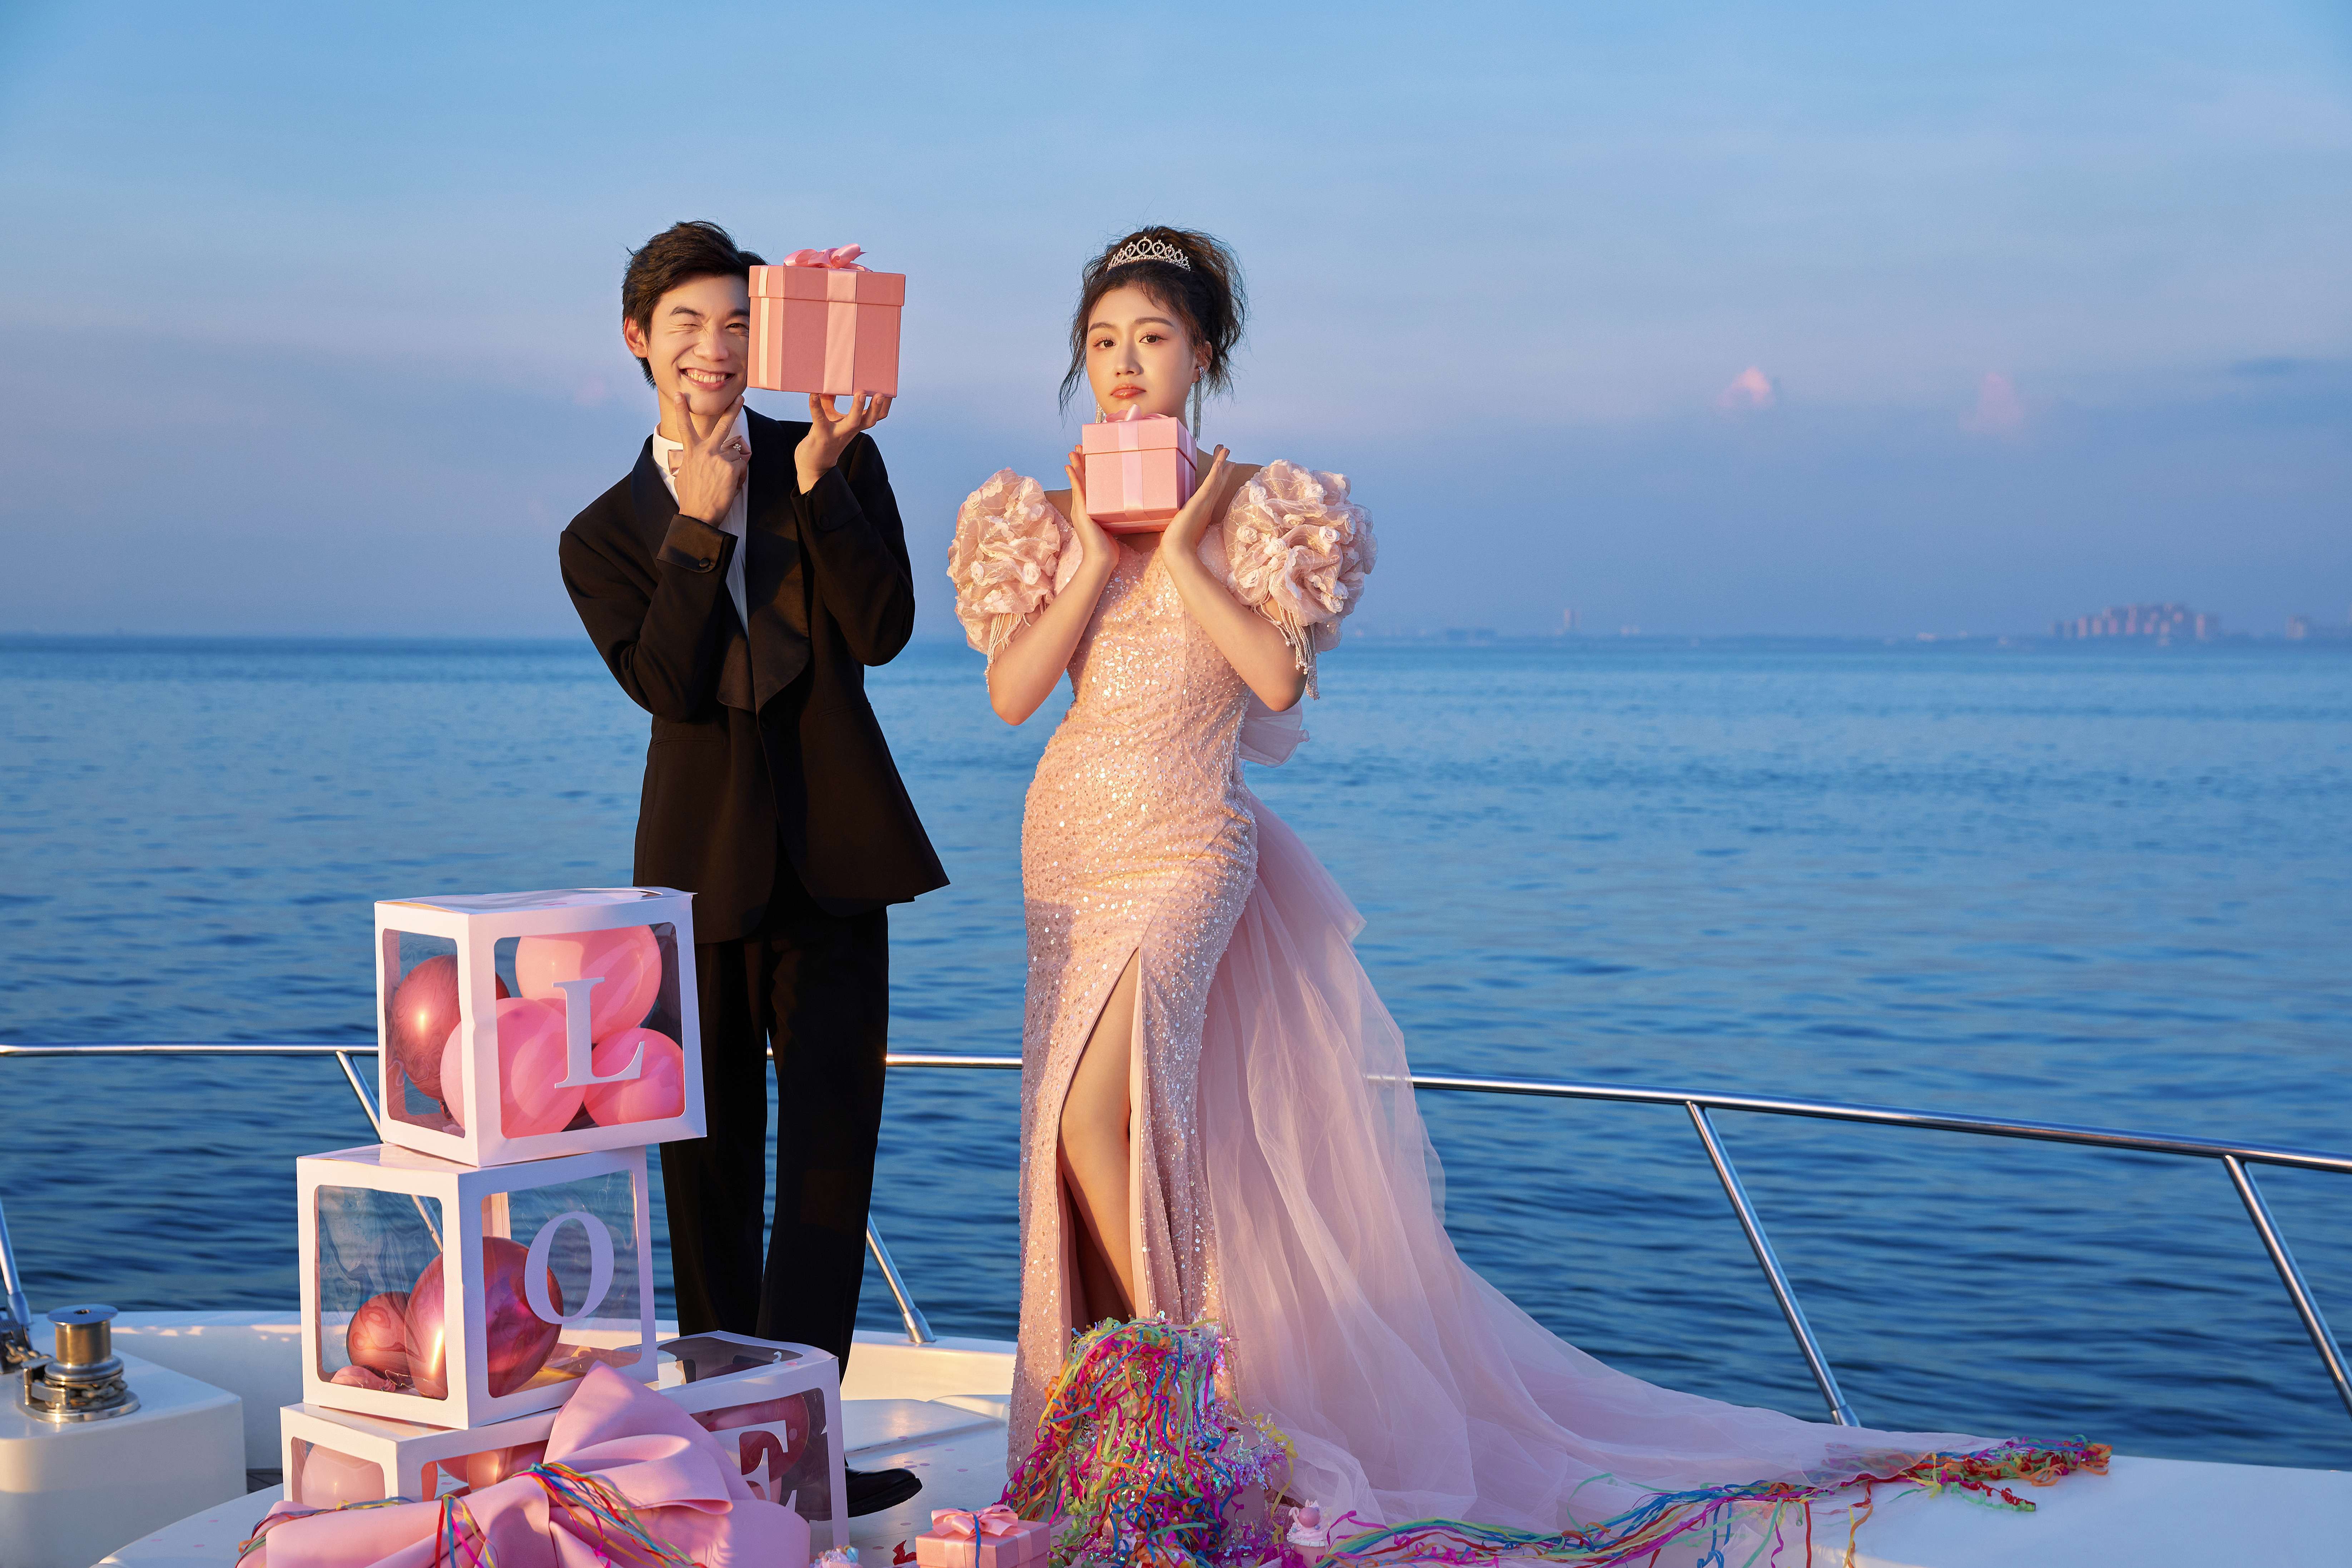 奢华的游艇与北海亲密接触，粉色纱裙点缀着海的浪漫